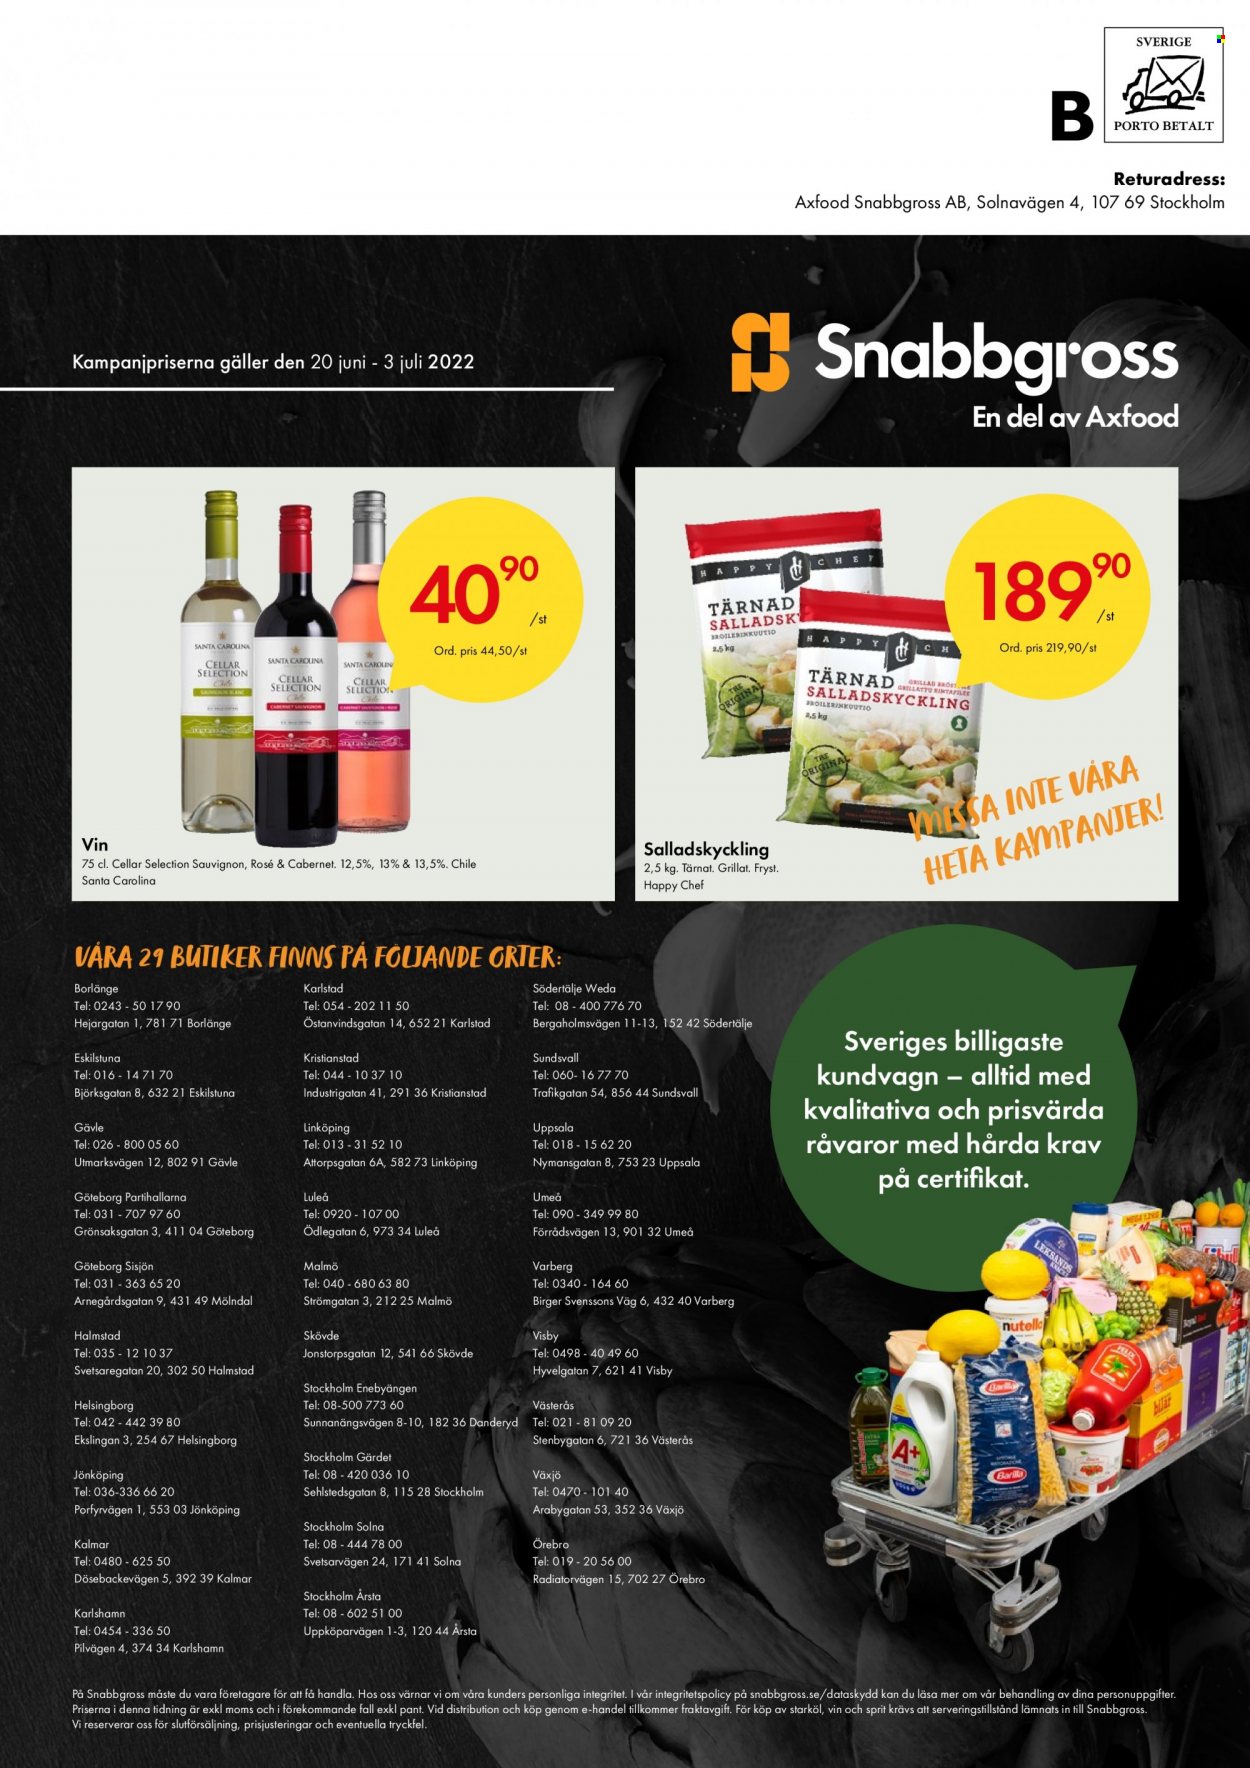 Axfood Snabbgross reklamblad - 20/6 2022 - 3/7 2022 - varor från reklamblad - vin. Sida 12.